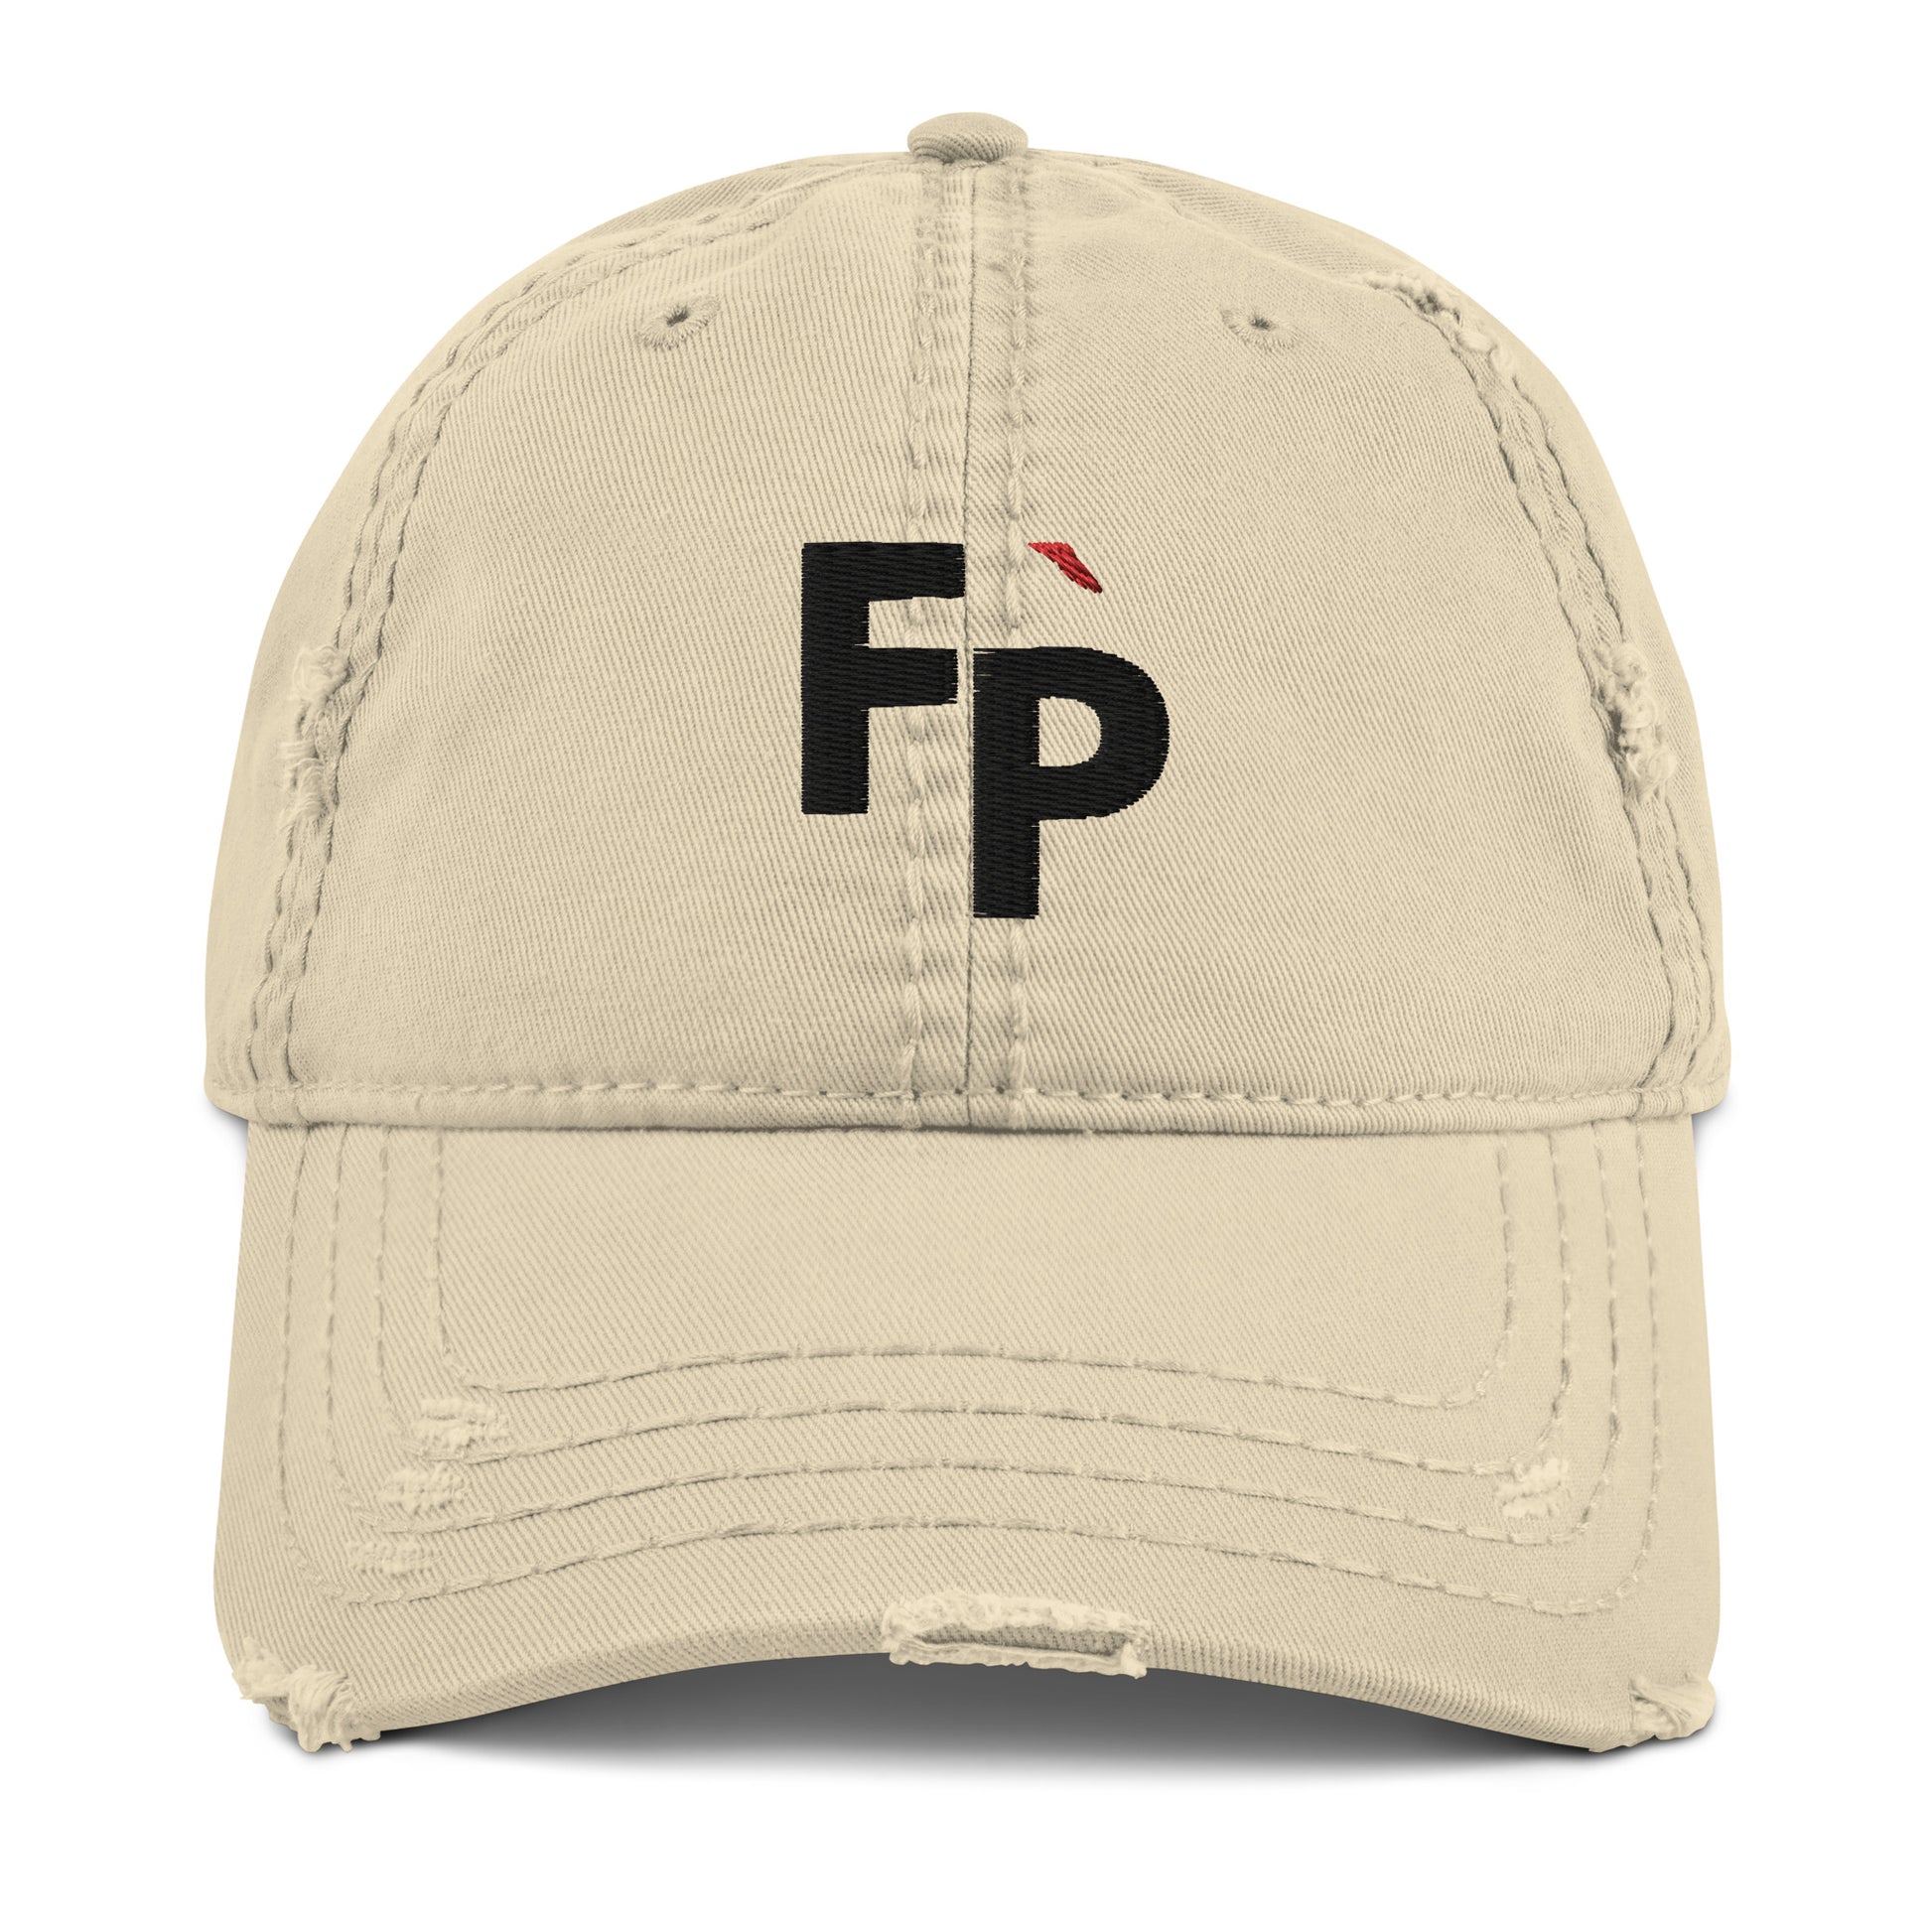 Logo 3D Embroidered Distressed Hat - FLÌ PÊP™